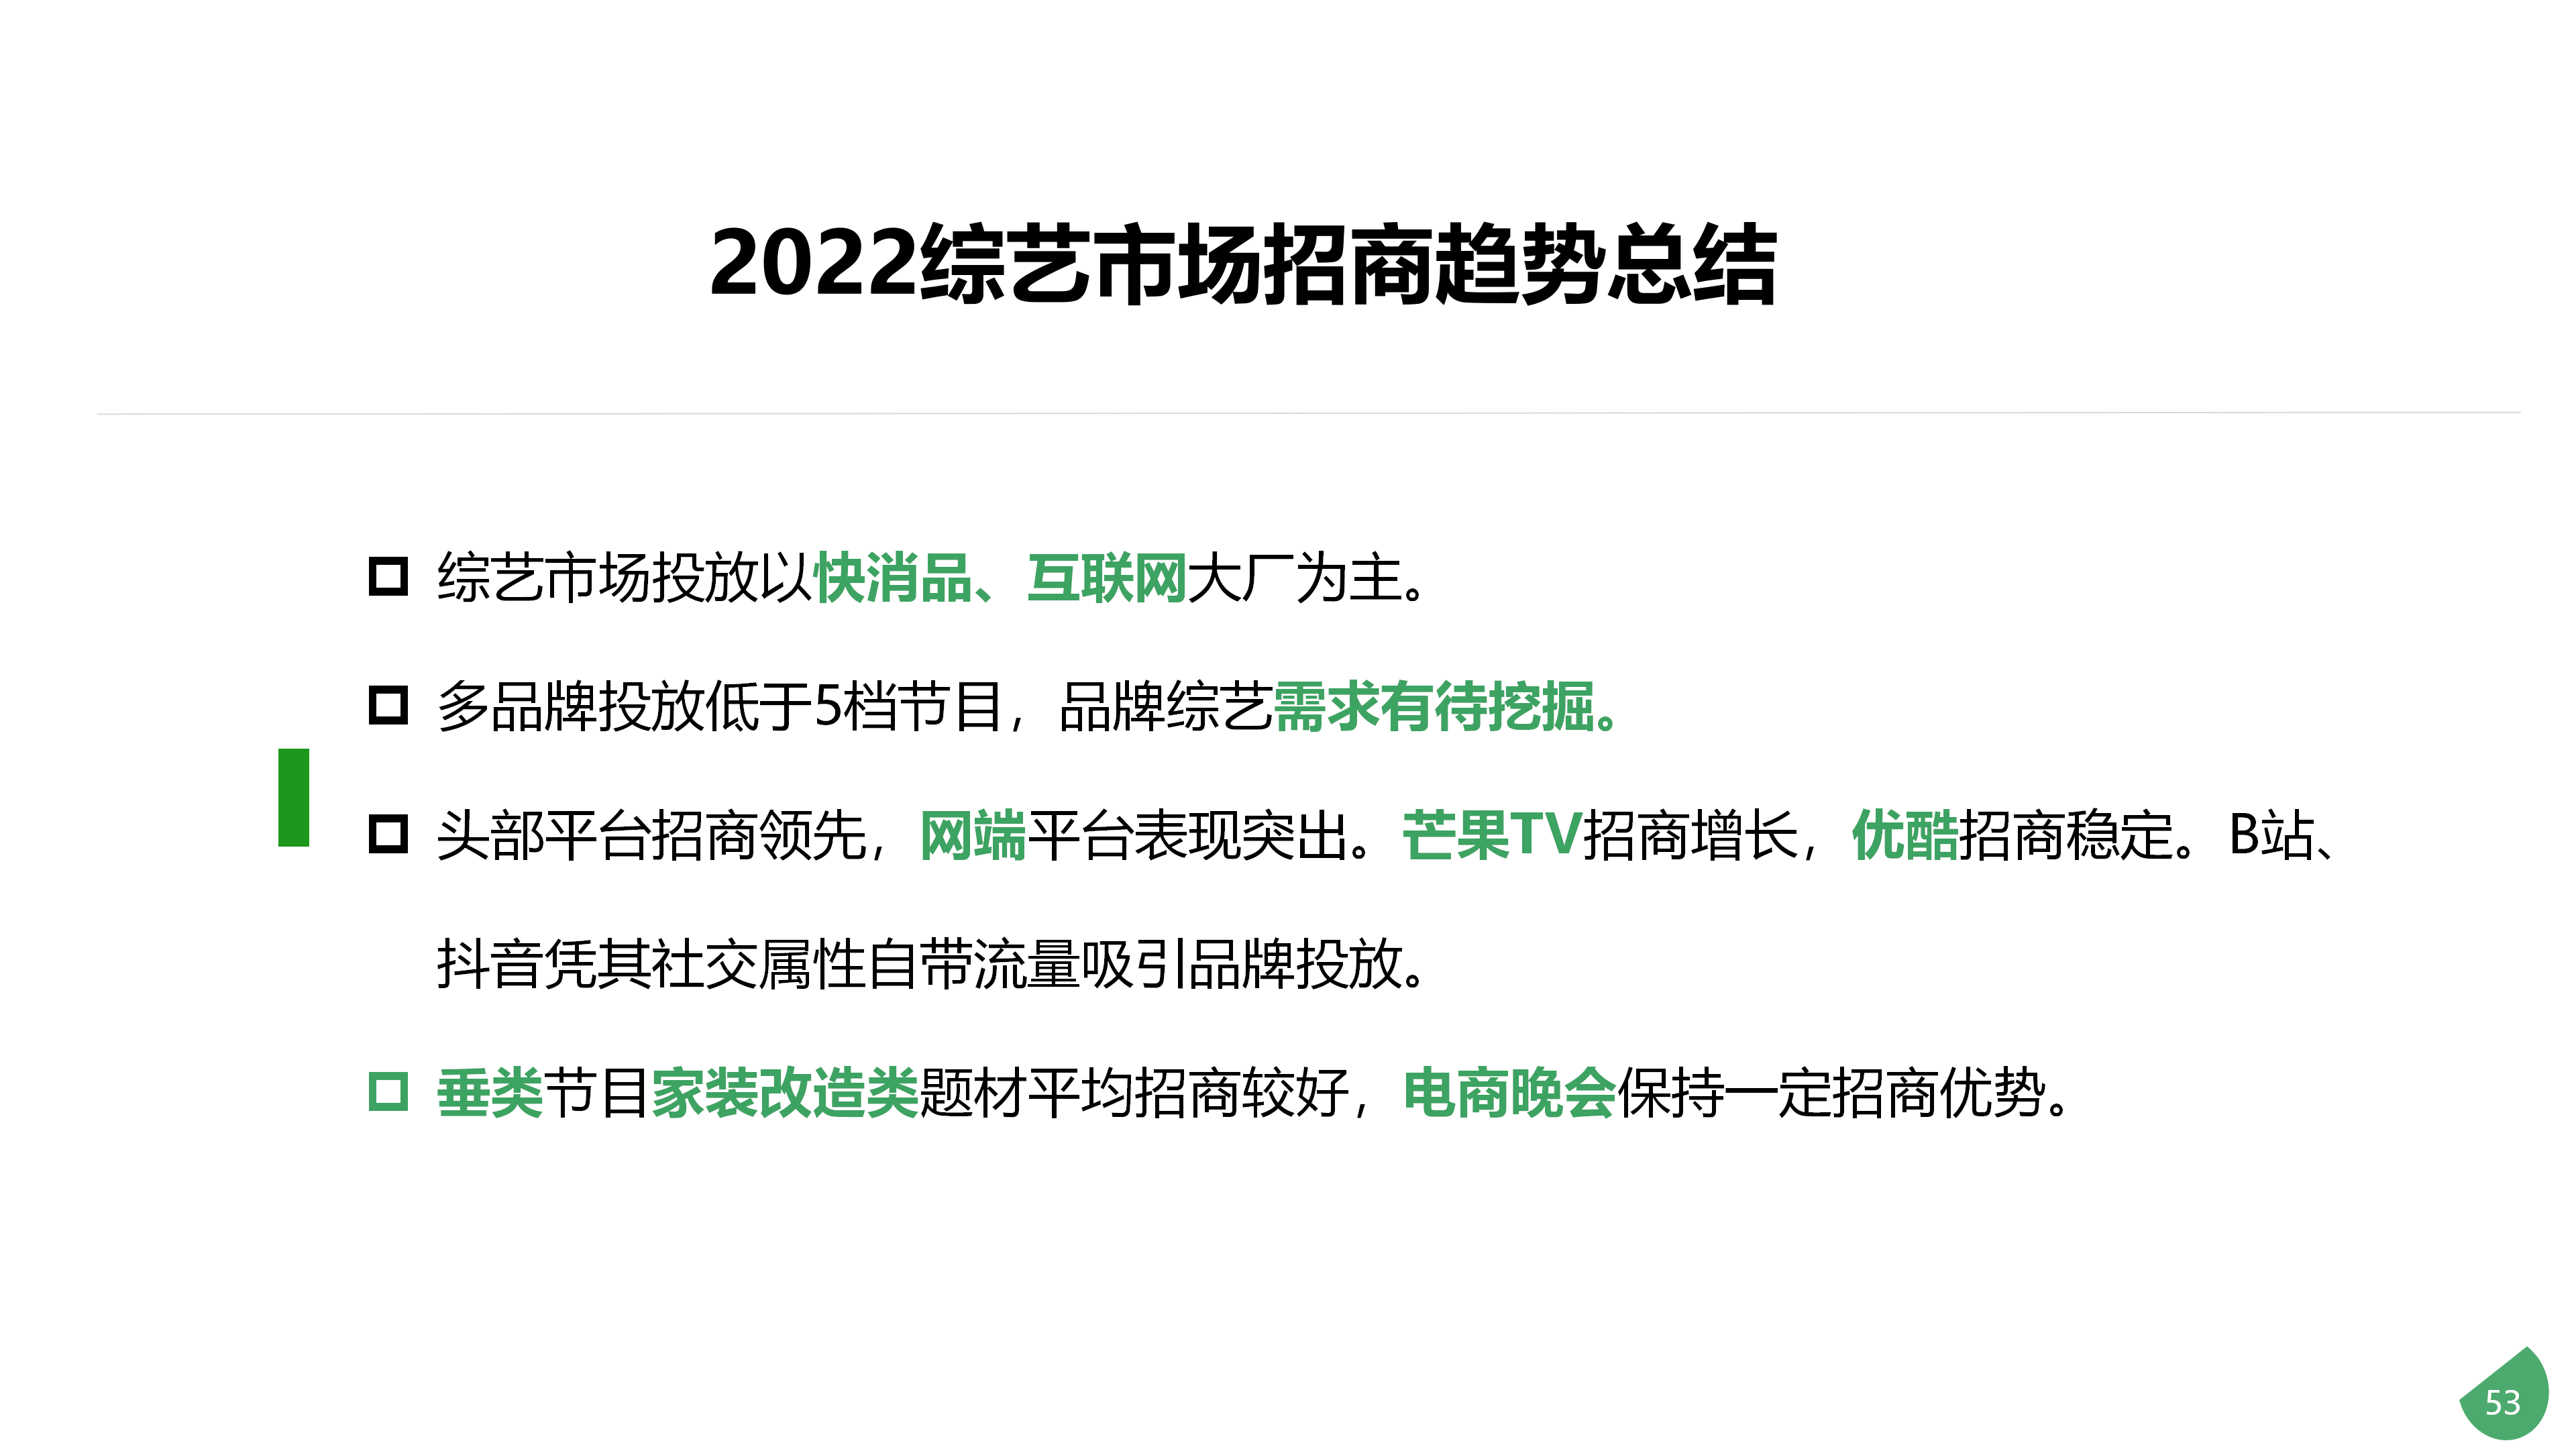 2022年综艺节目植入年度报告-0328_53.png